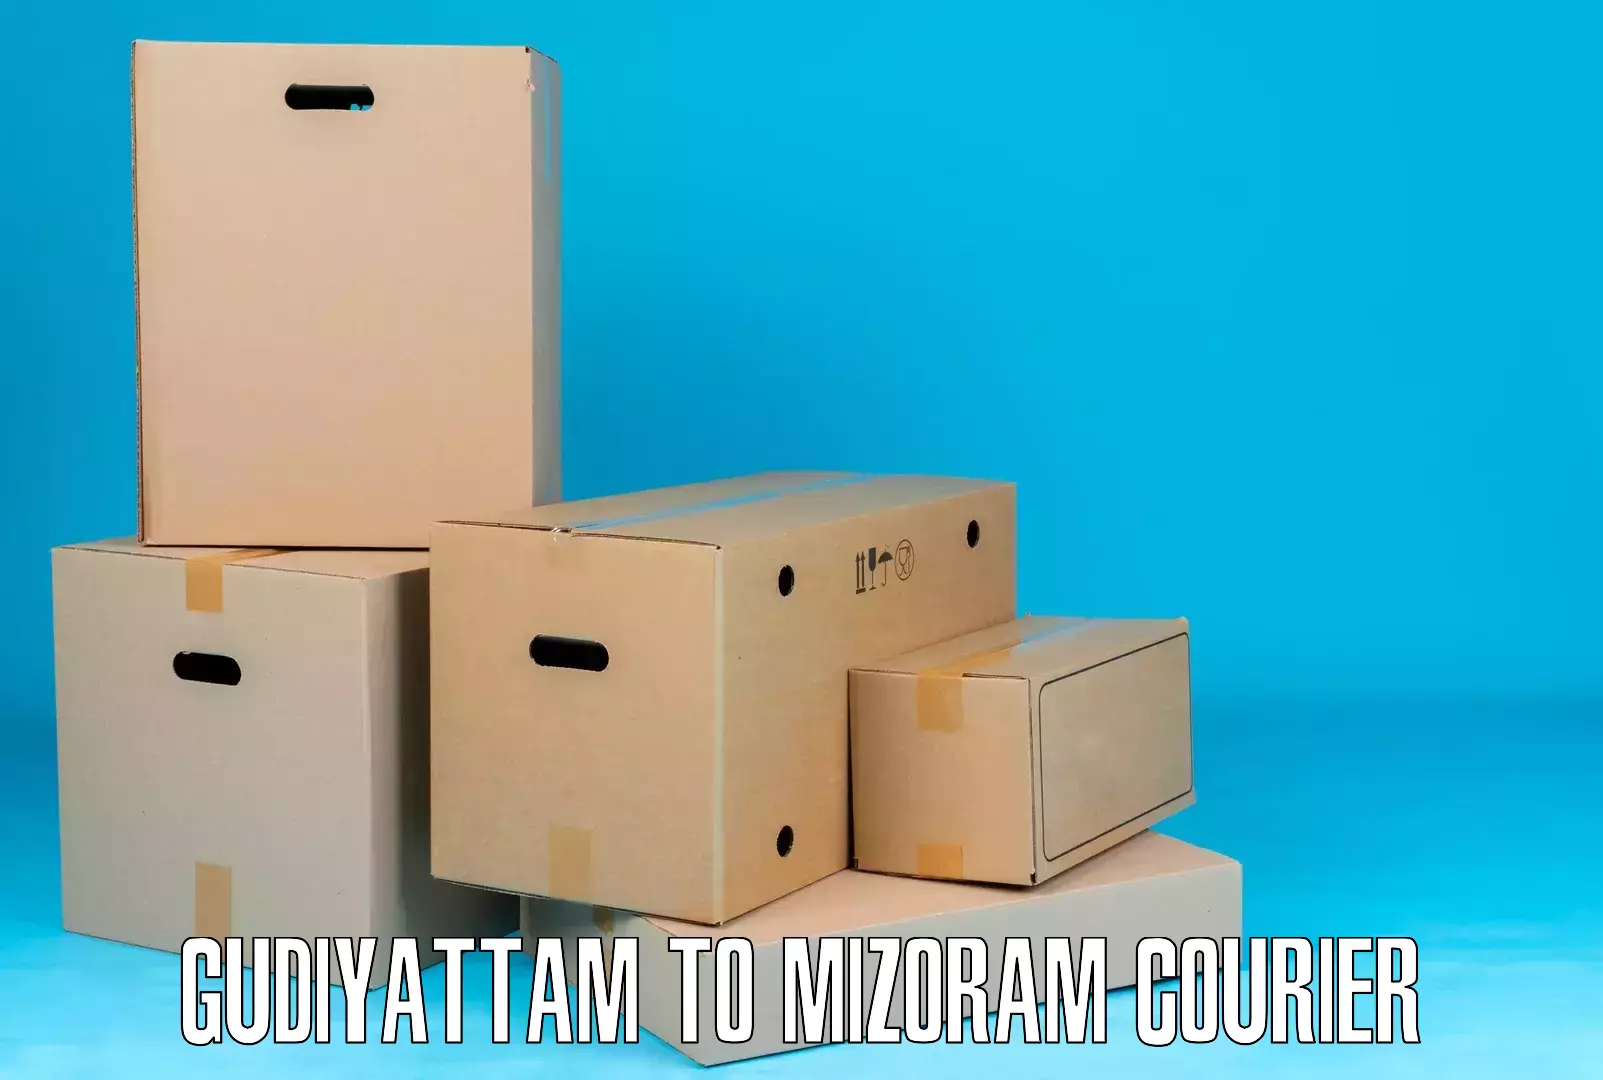 Package tracking Gudiyattam to Darlawn